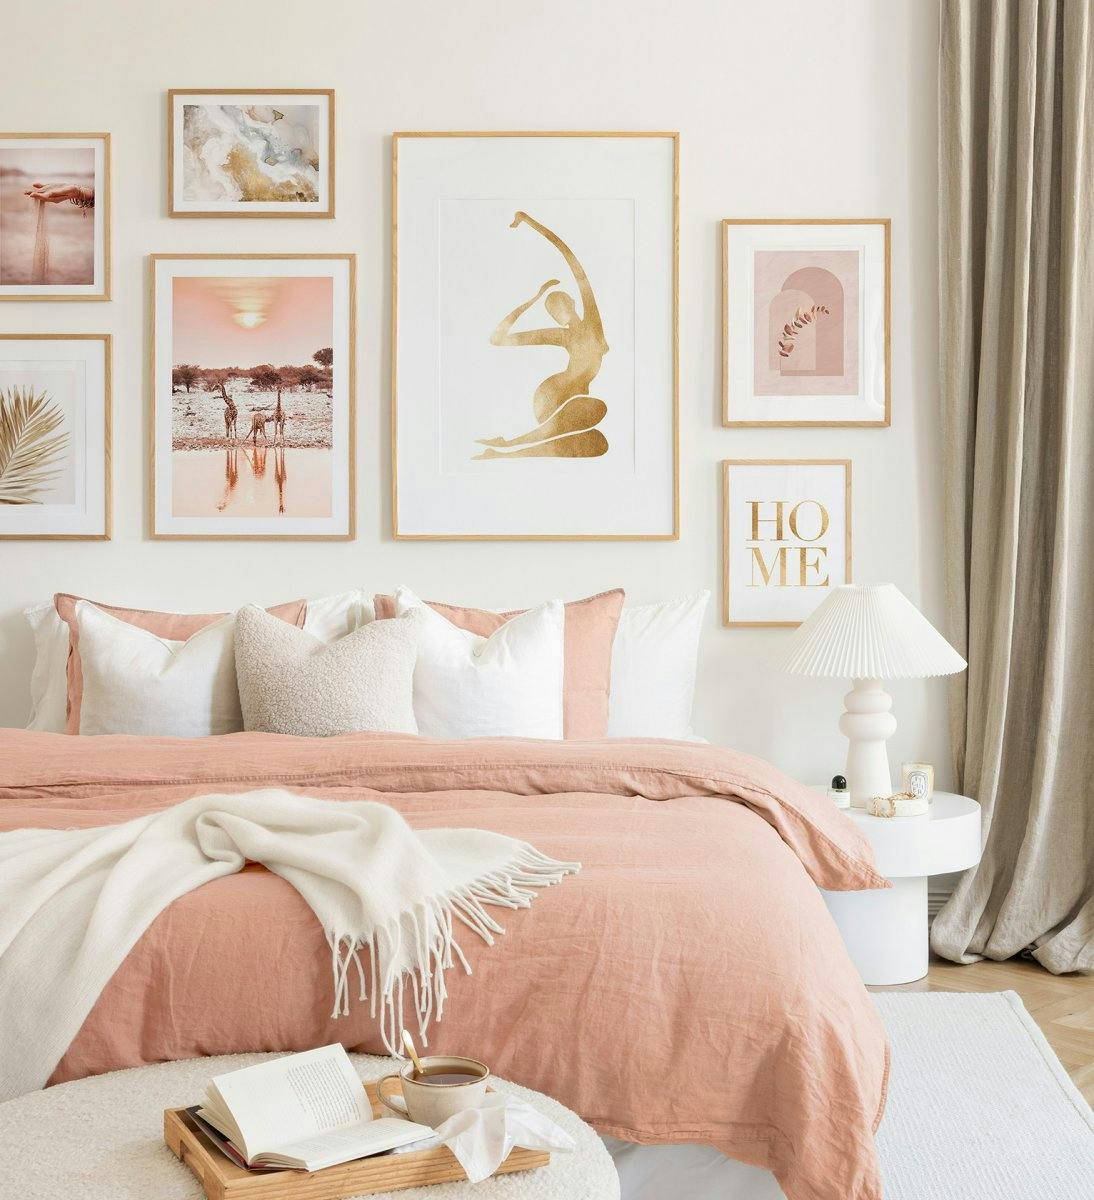 En tavelvägg med ljusrosa och beige inslag i ekramar skapar en harmonisk atmosfär i sovrummet.